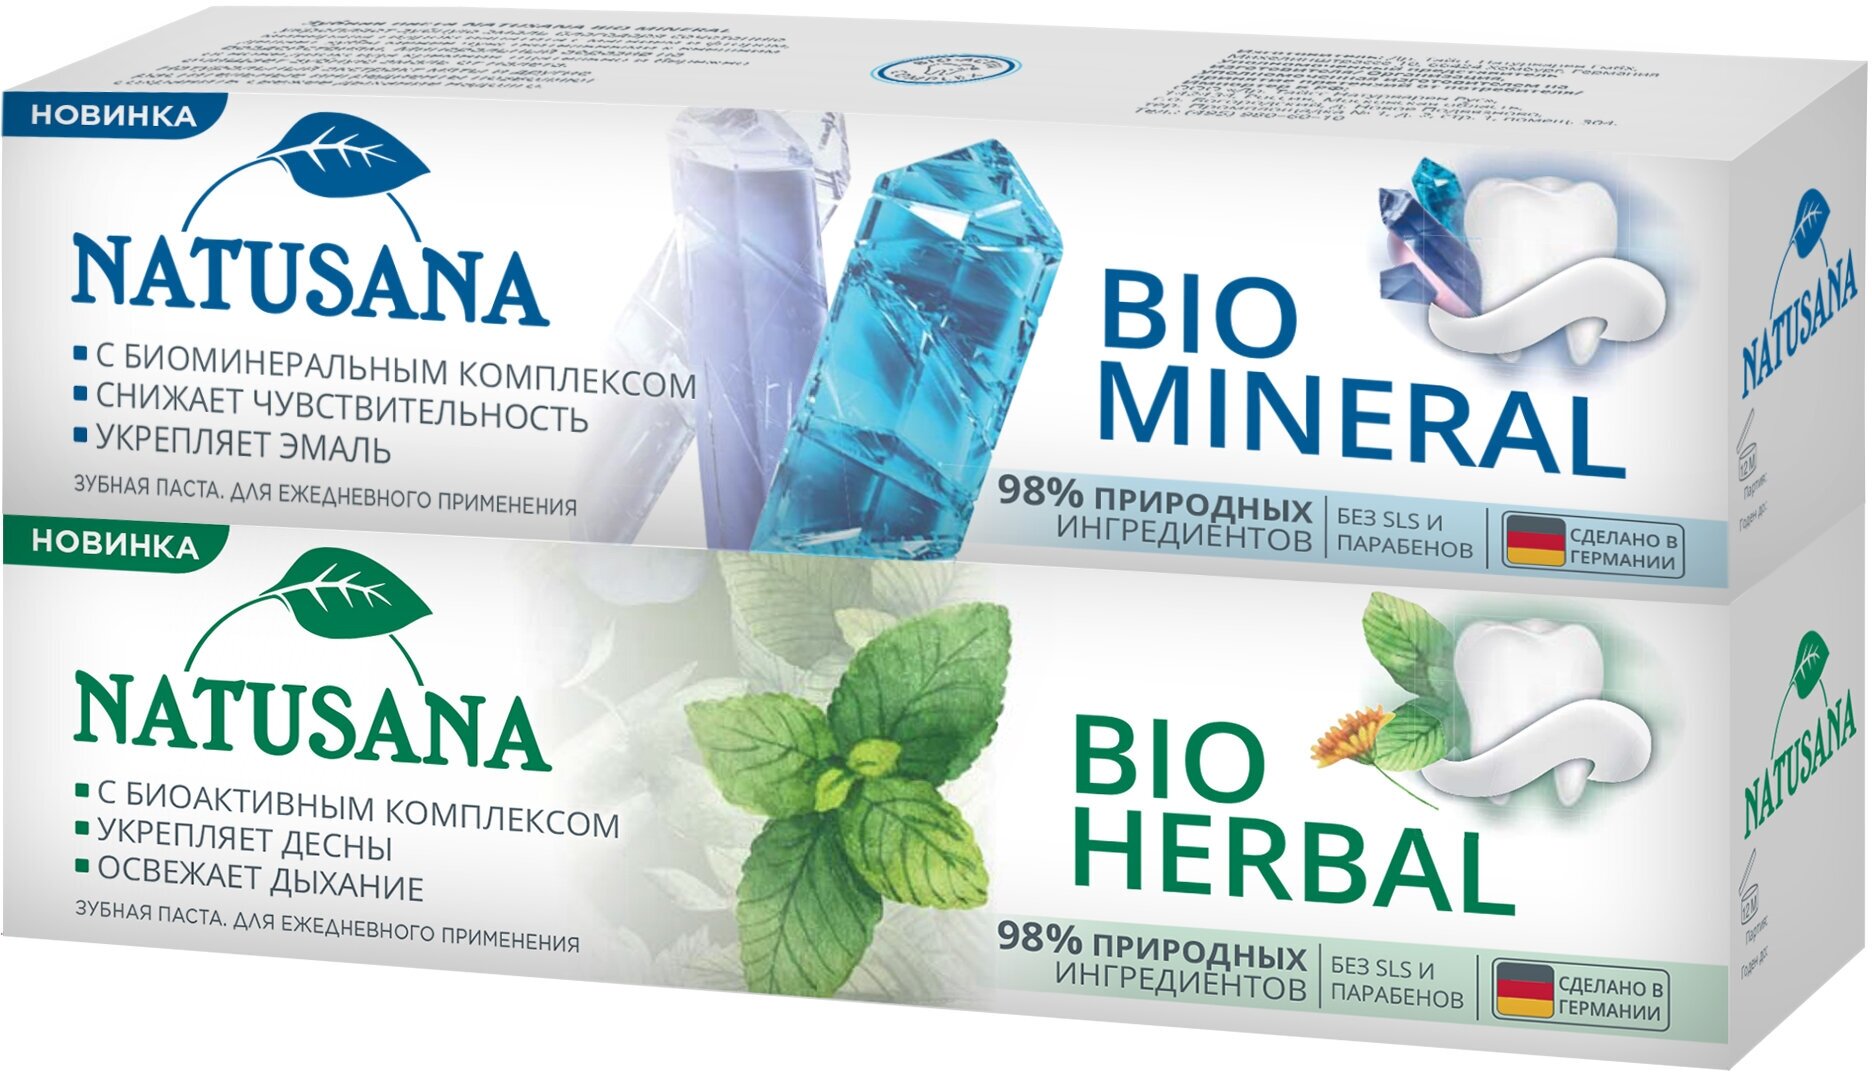 Natusana bio herbal зубная паста, 100 мл + Natusana bio mineral зубная паста, 100 мл